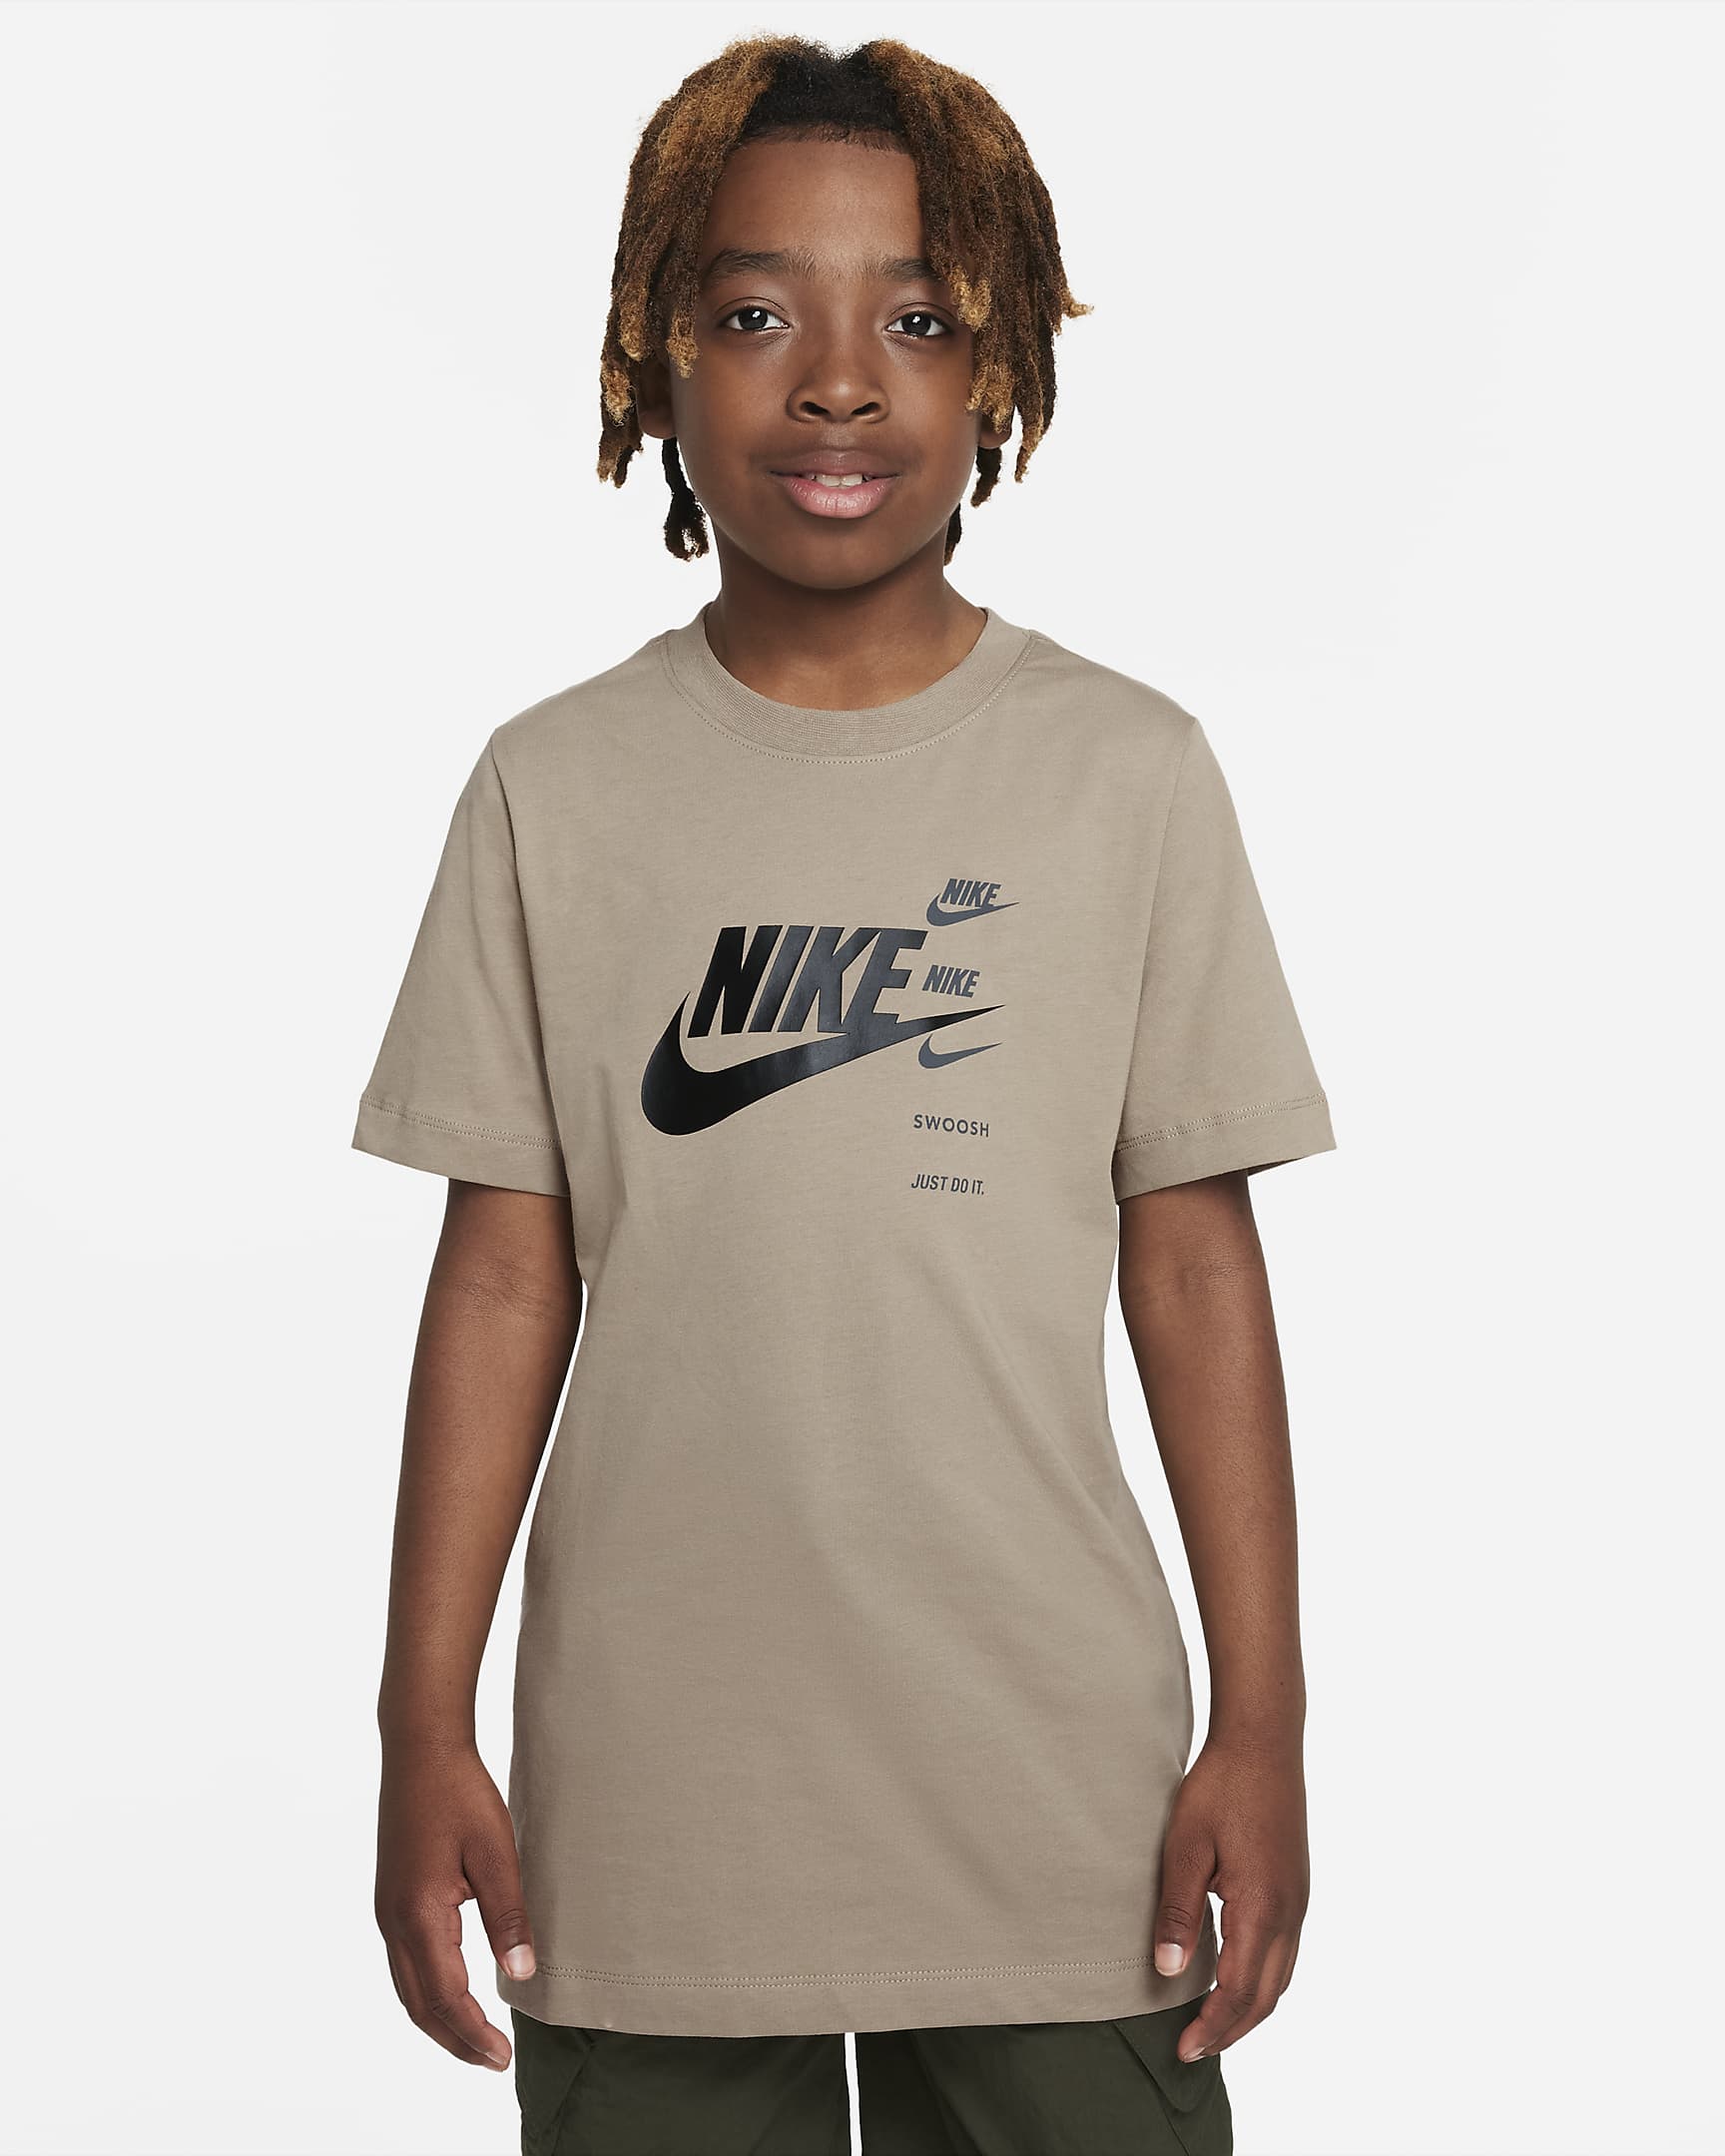 Nike Sportswear Standard Issue Older Kids' (Boys') T-shirt. Nike LU